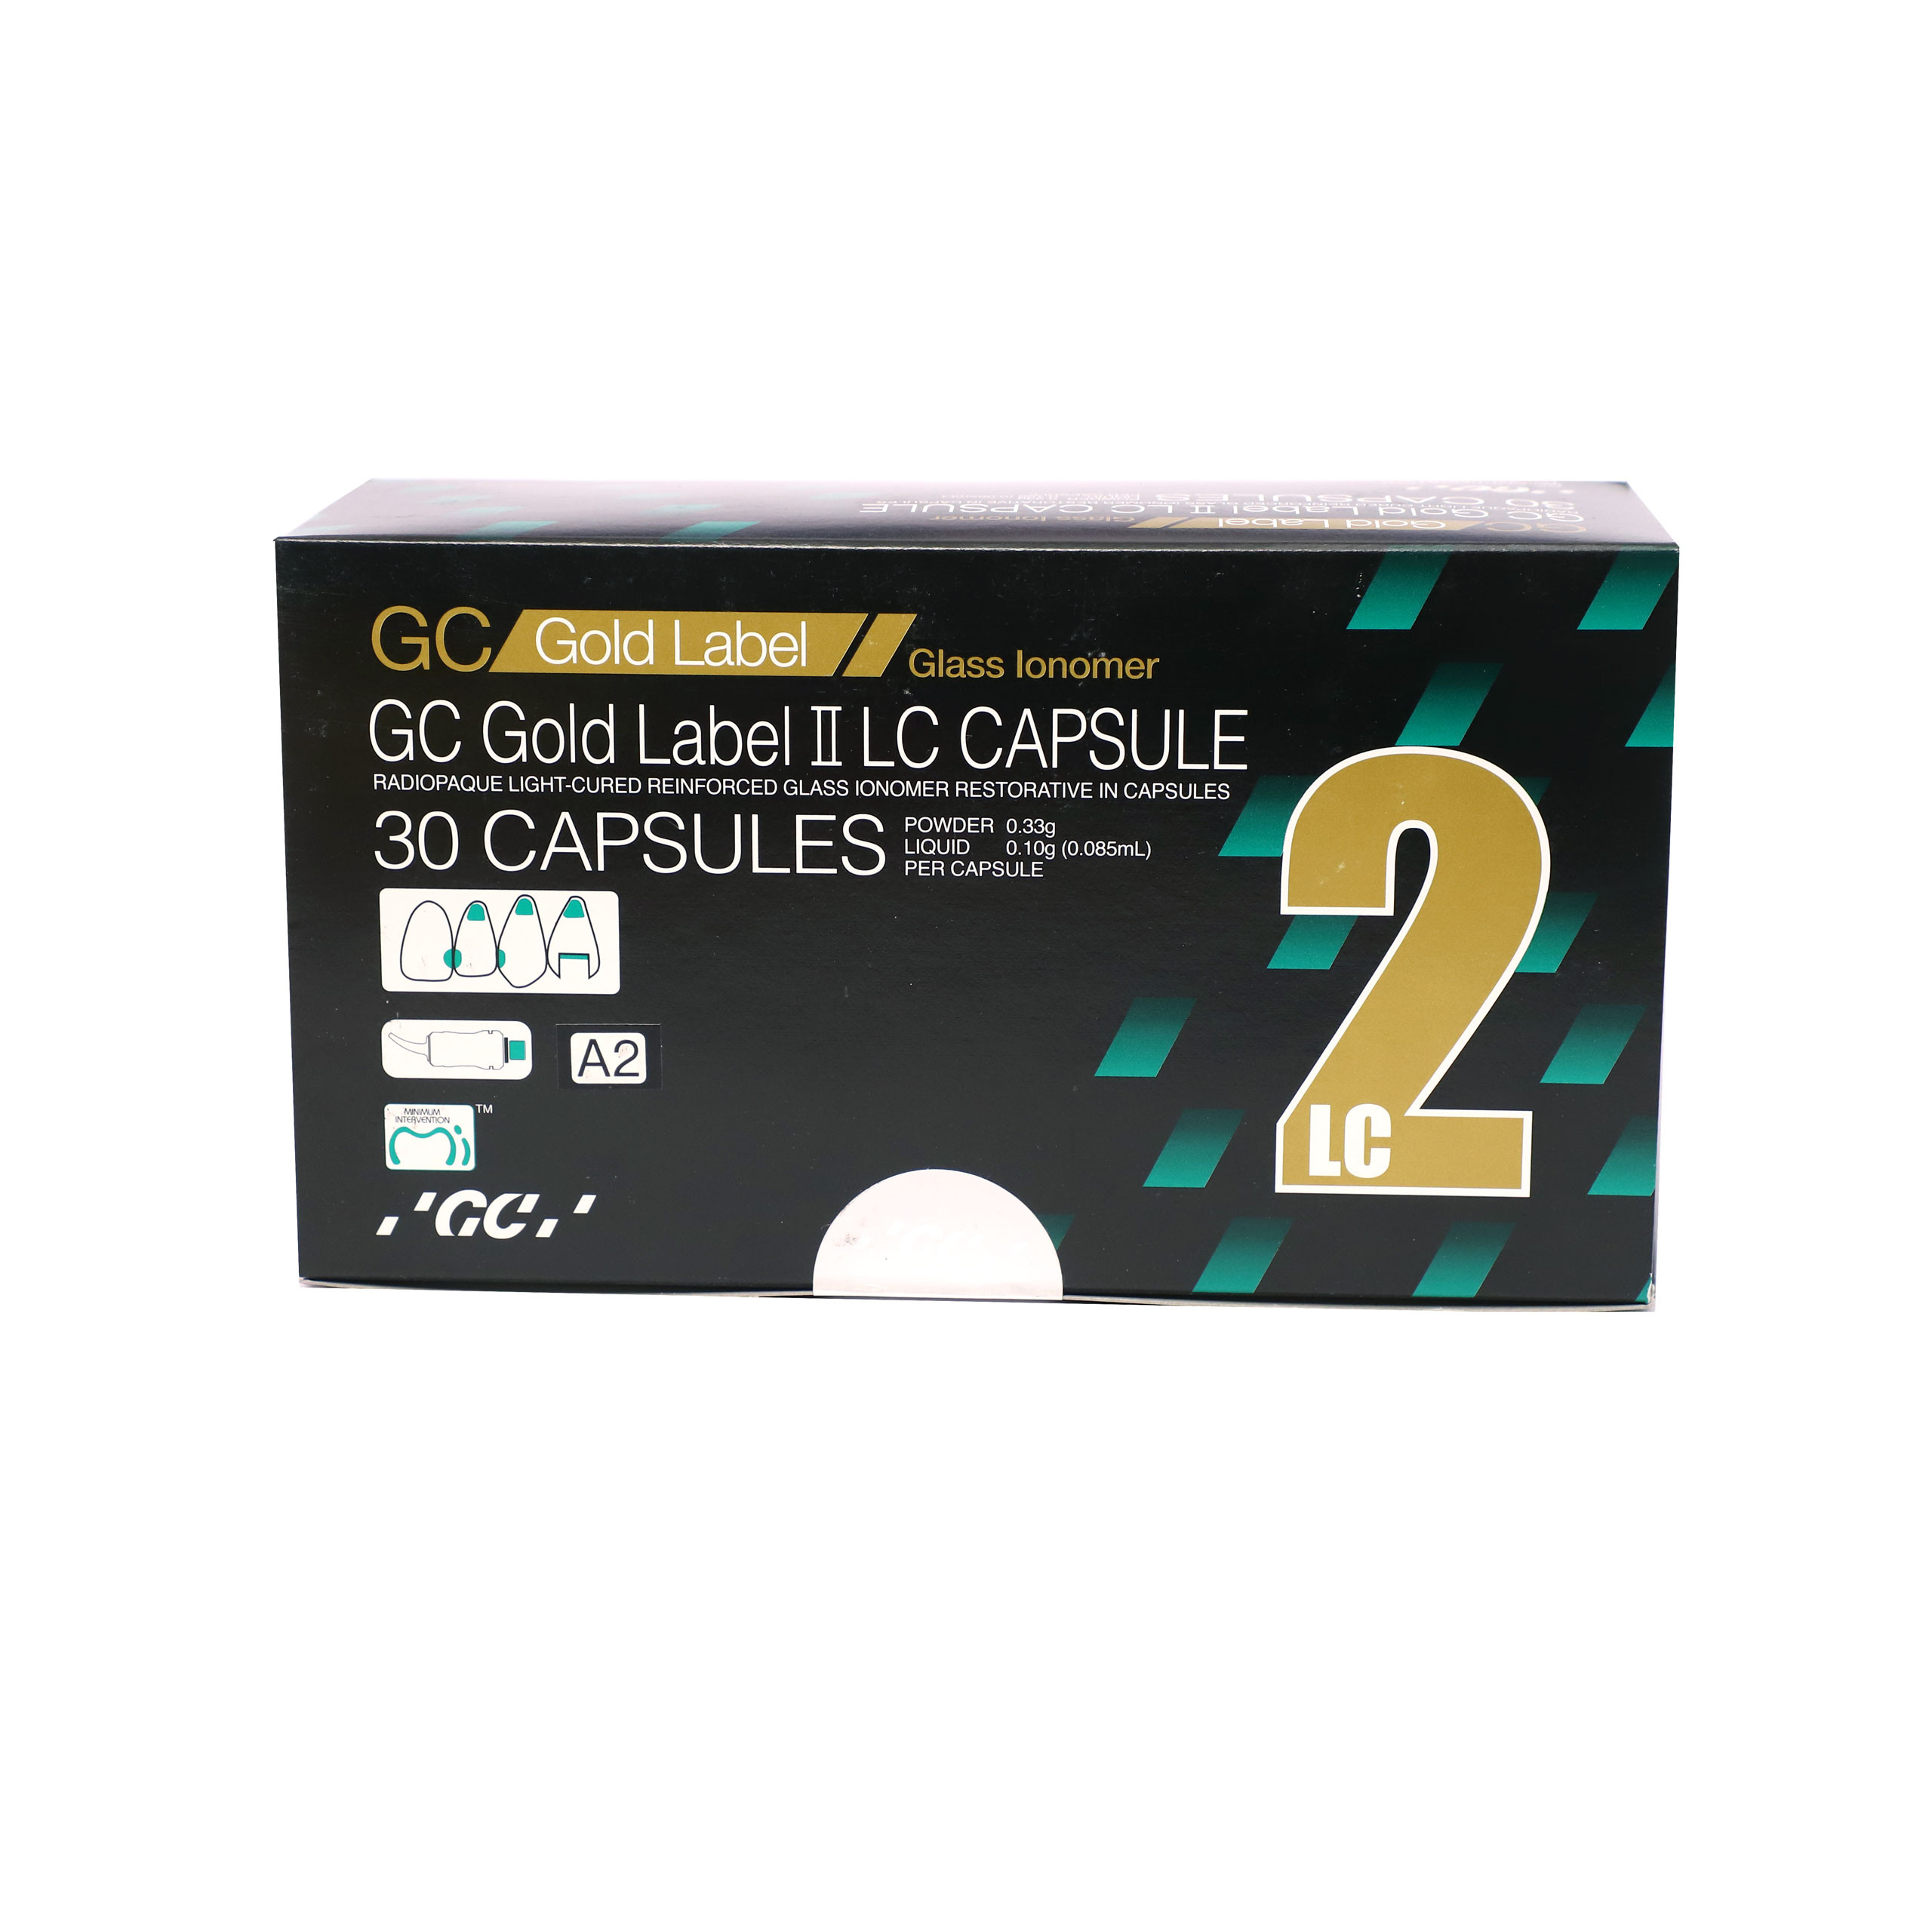 GC Gold Label 2 LC Capsule 30pcs